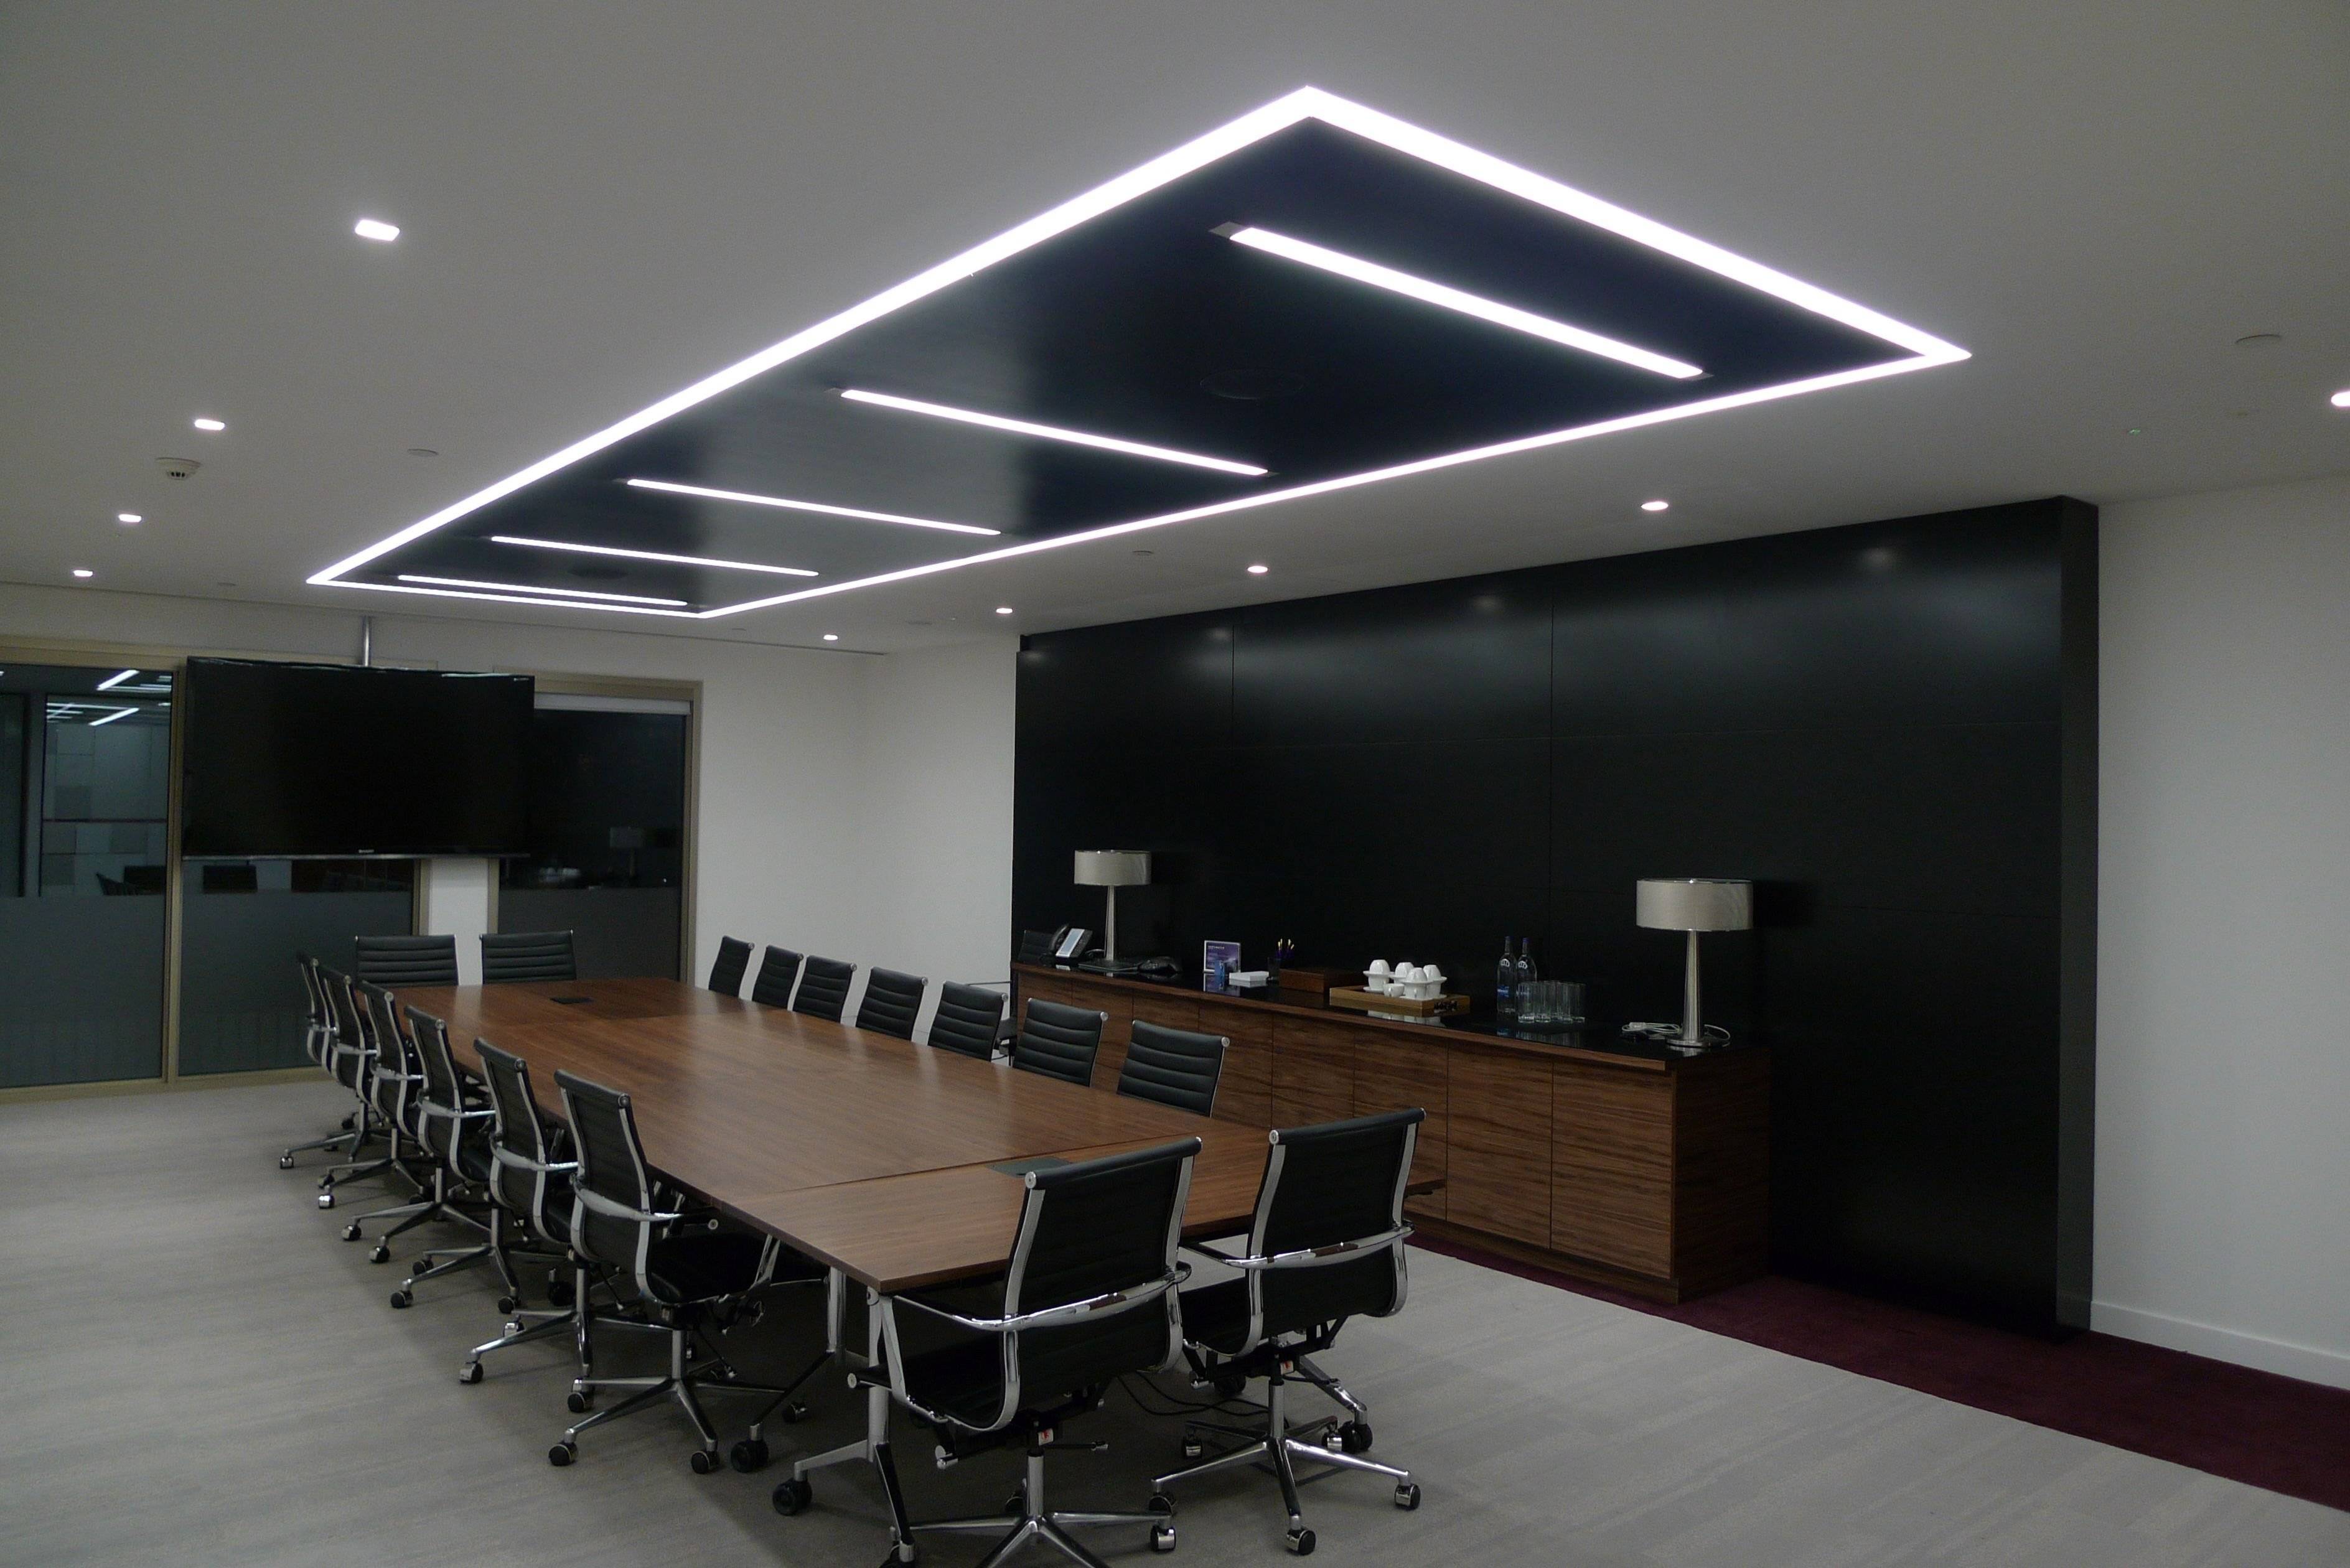 Потолочные светильники для офиса: какое освещение выбрать, какие лучше: подвесные, светодиодные или встраиваемые, преимущества и недостатки